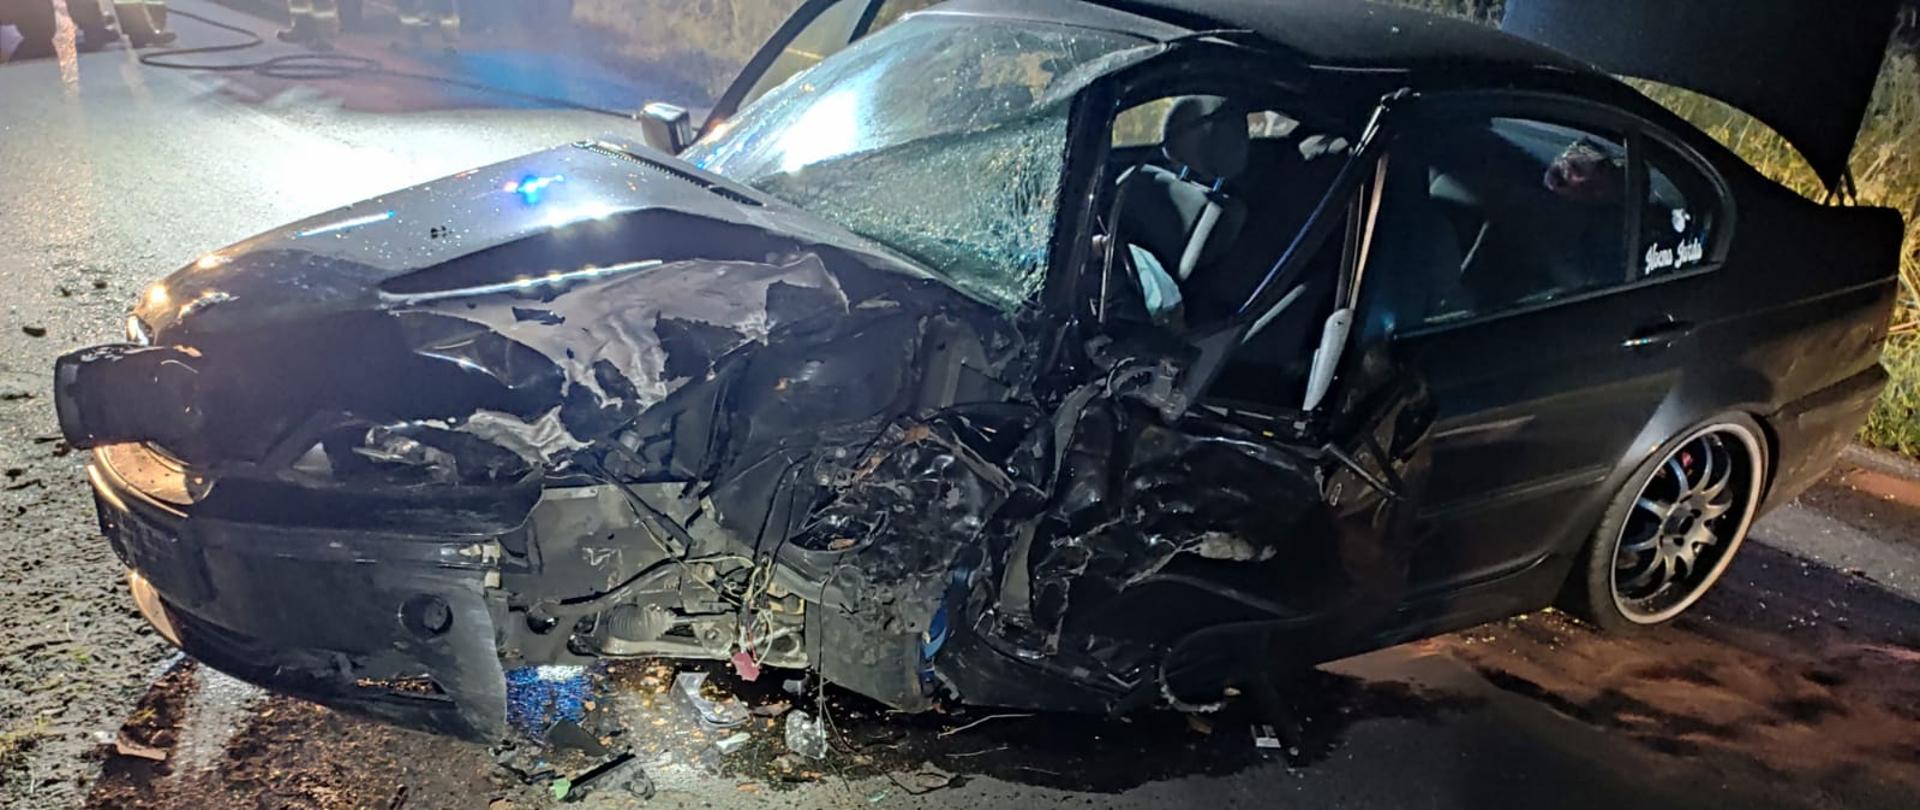 Na zdjęciu rozbity samochód osobowy uszkodzenia z przodu z rozbitą szybą i bokiem lewym